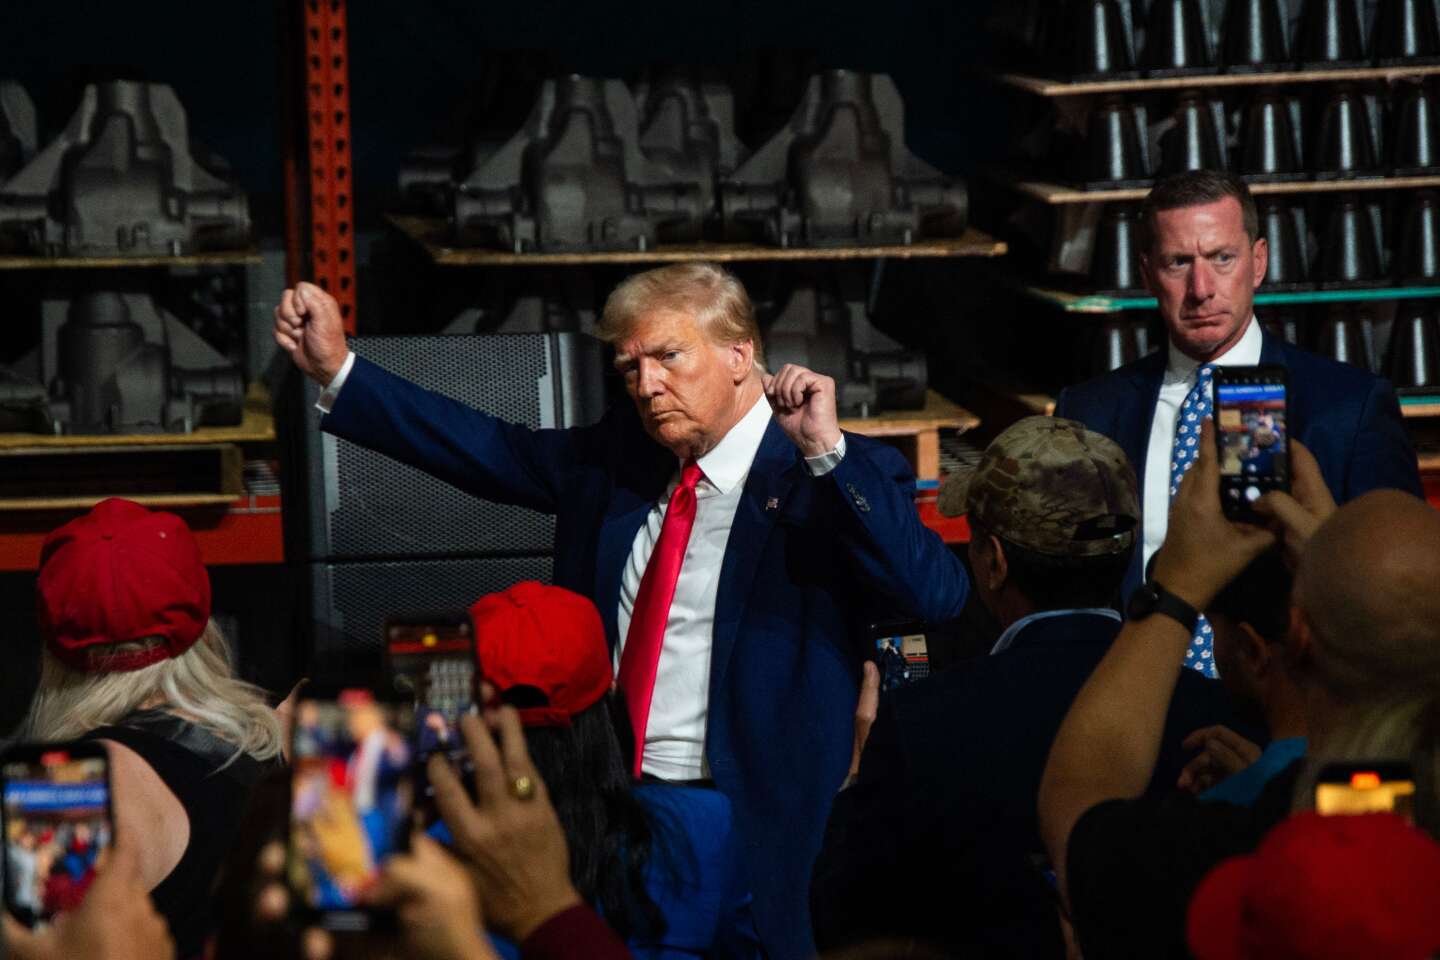 Tijdens een bijeenkomst in een opvallende fabriek in Detroit opent Donald Trump de strijd om de stemmen van de arbeiders